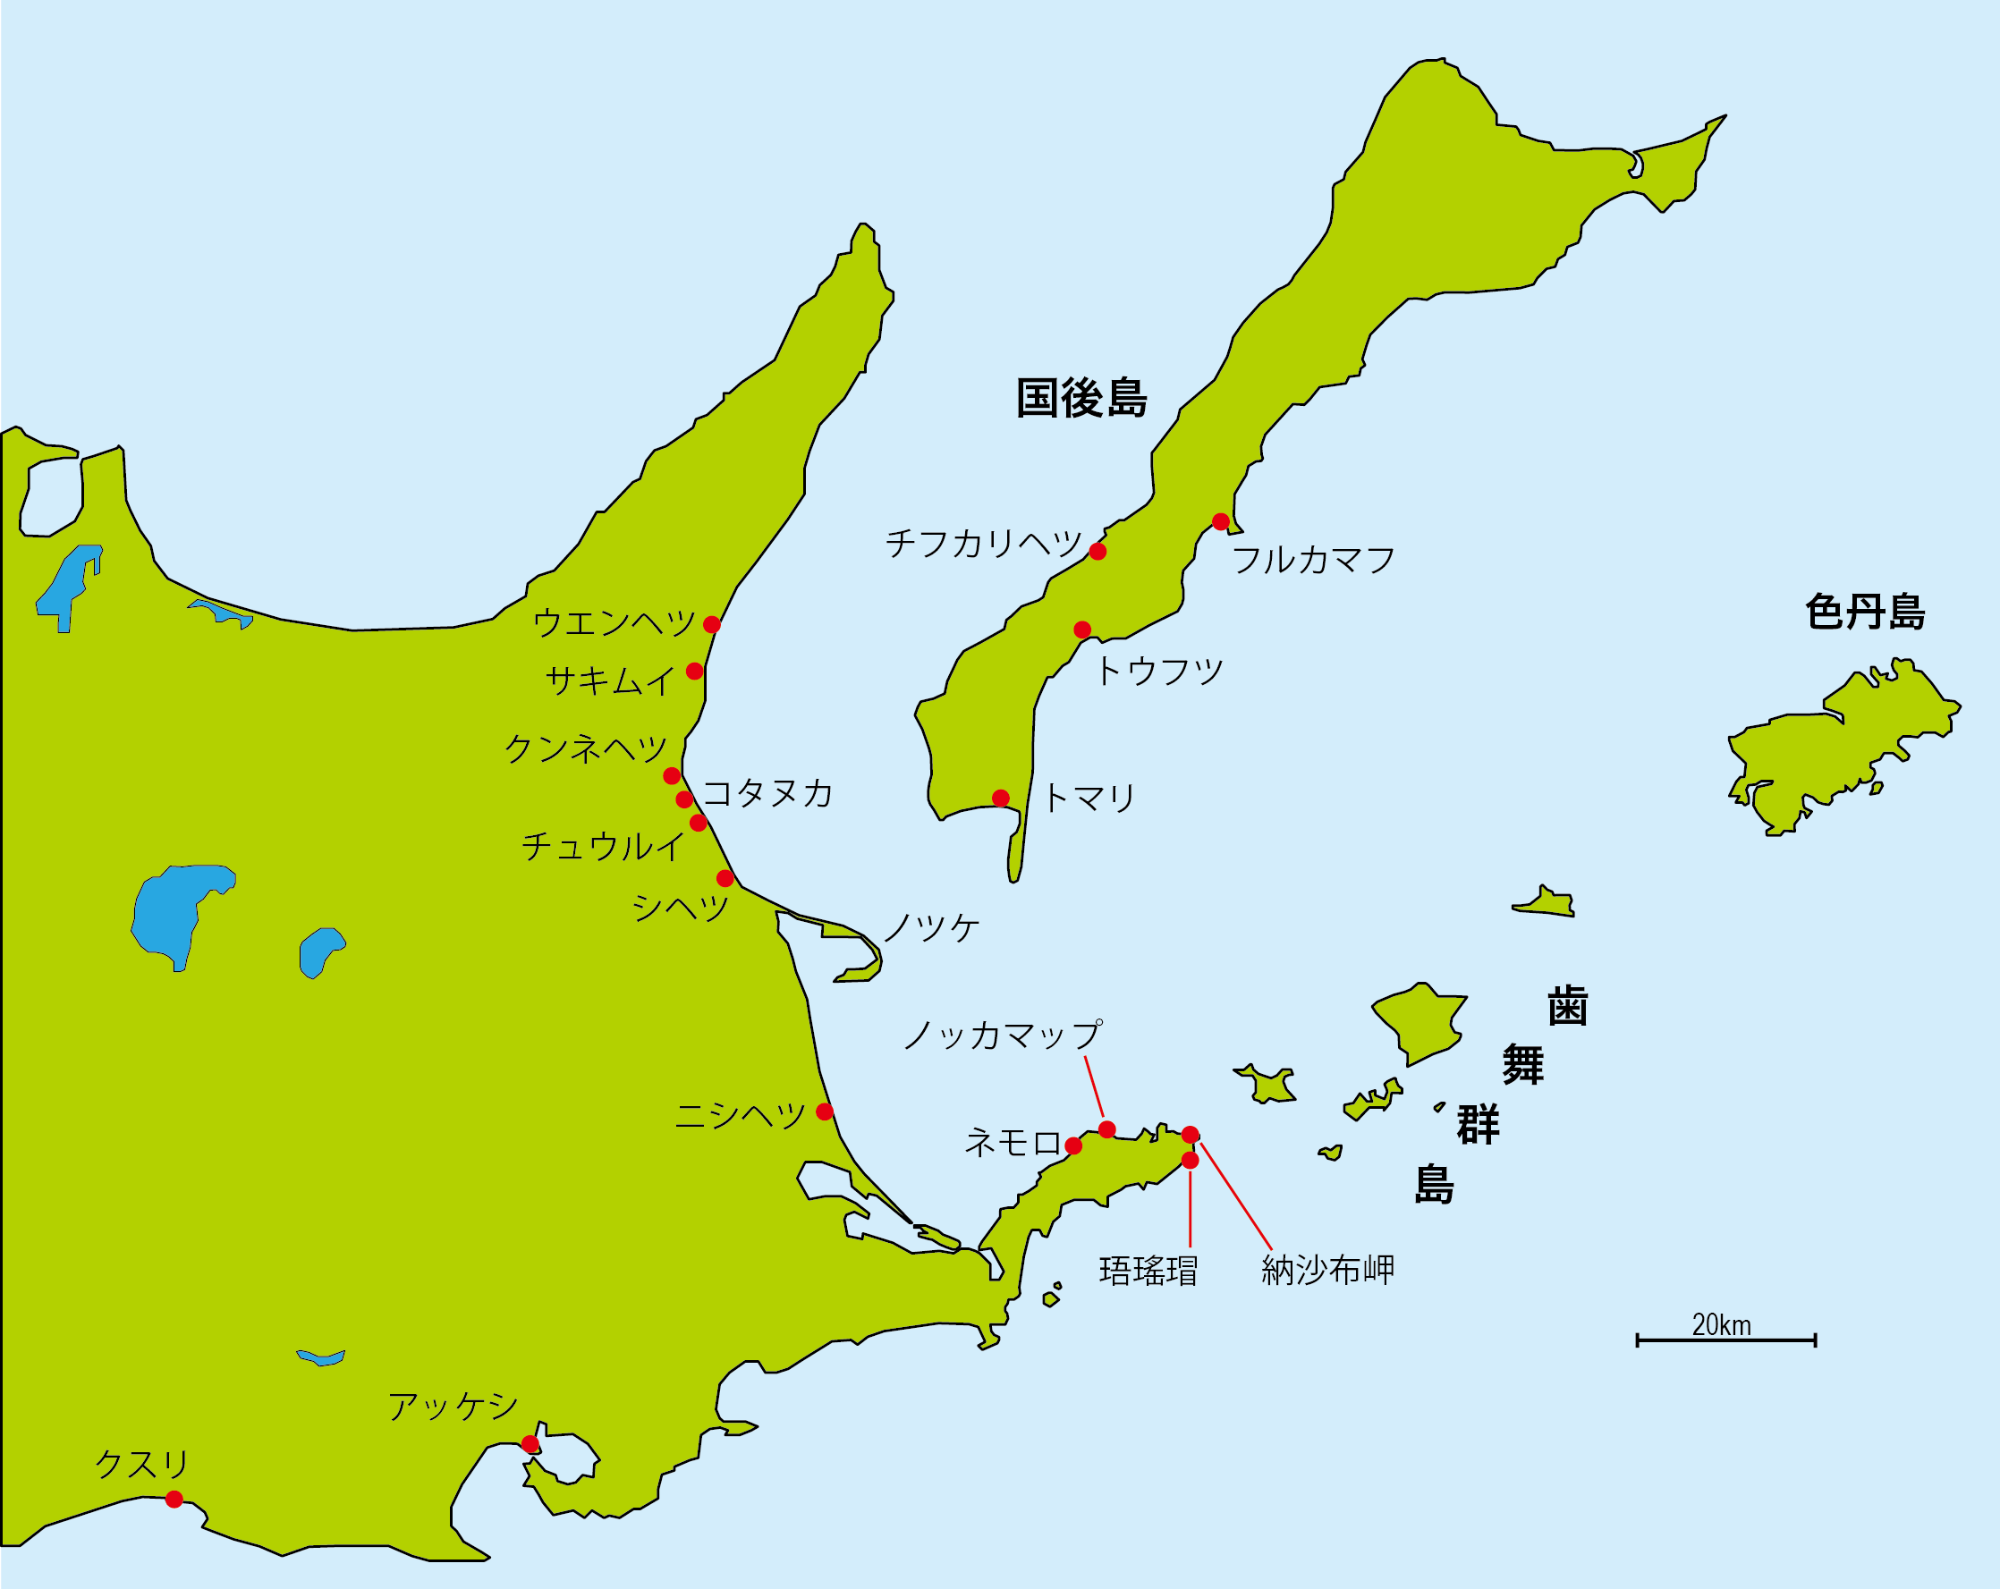 クナシリ・メナシの戦い関係地名図